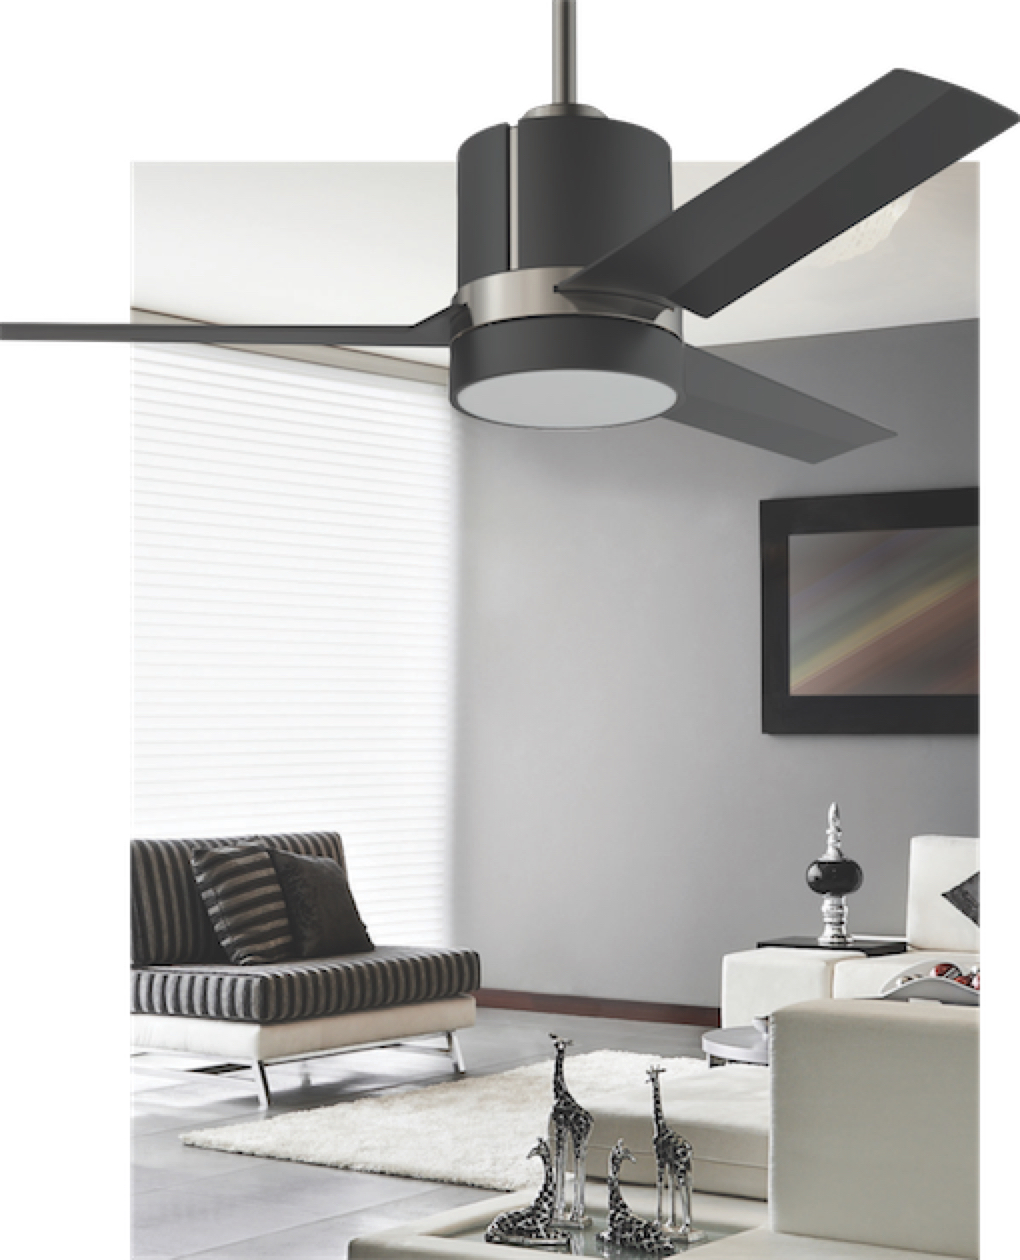 Ventilateur de plafond moderne TRINITY Kendal AC24144-BLK-SN dans le salon avec mobilier chic et accessoires girafes